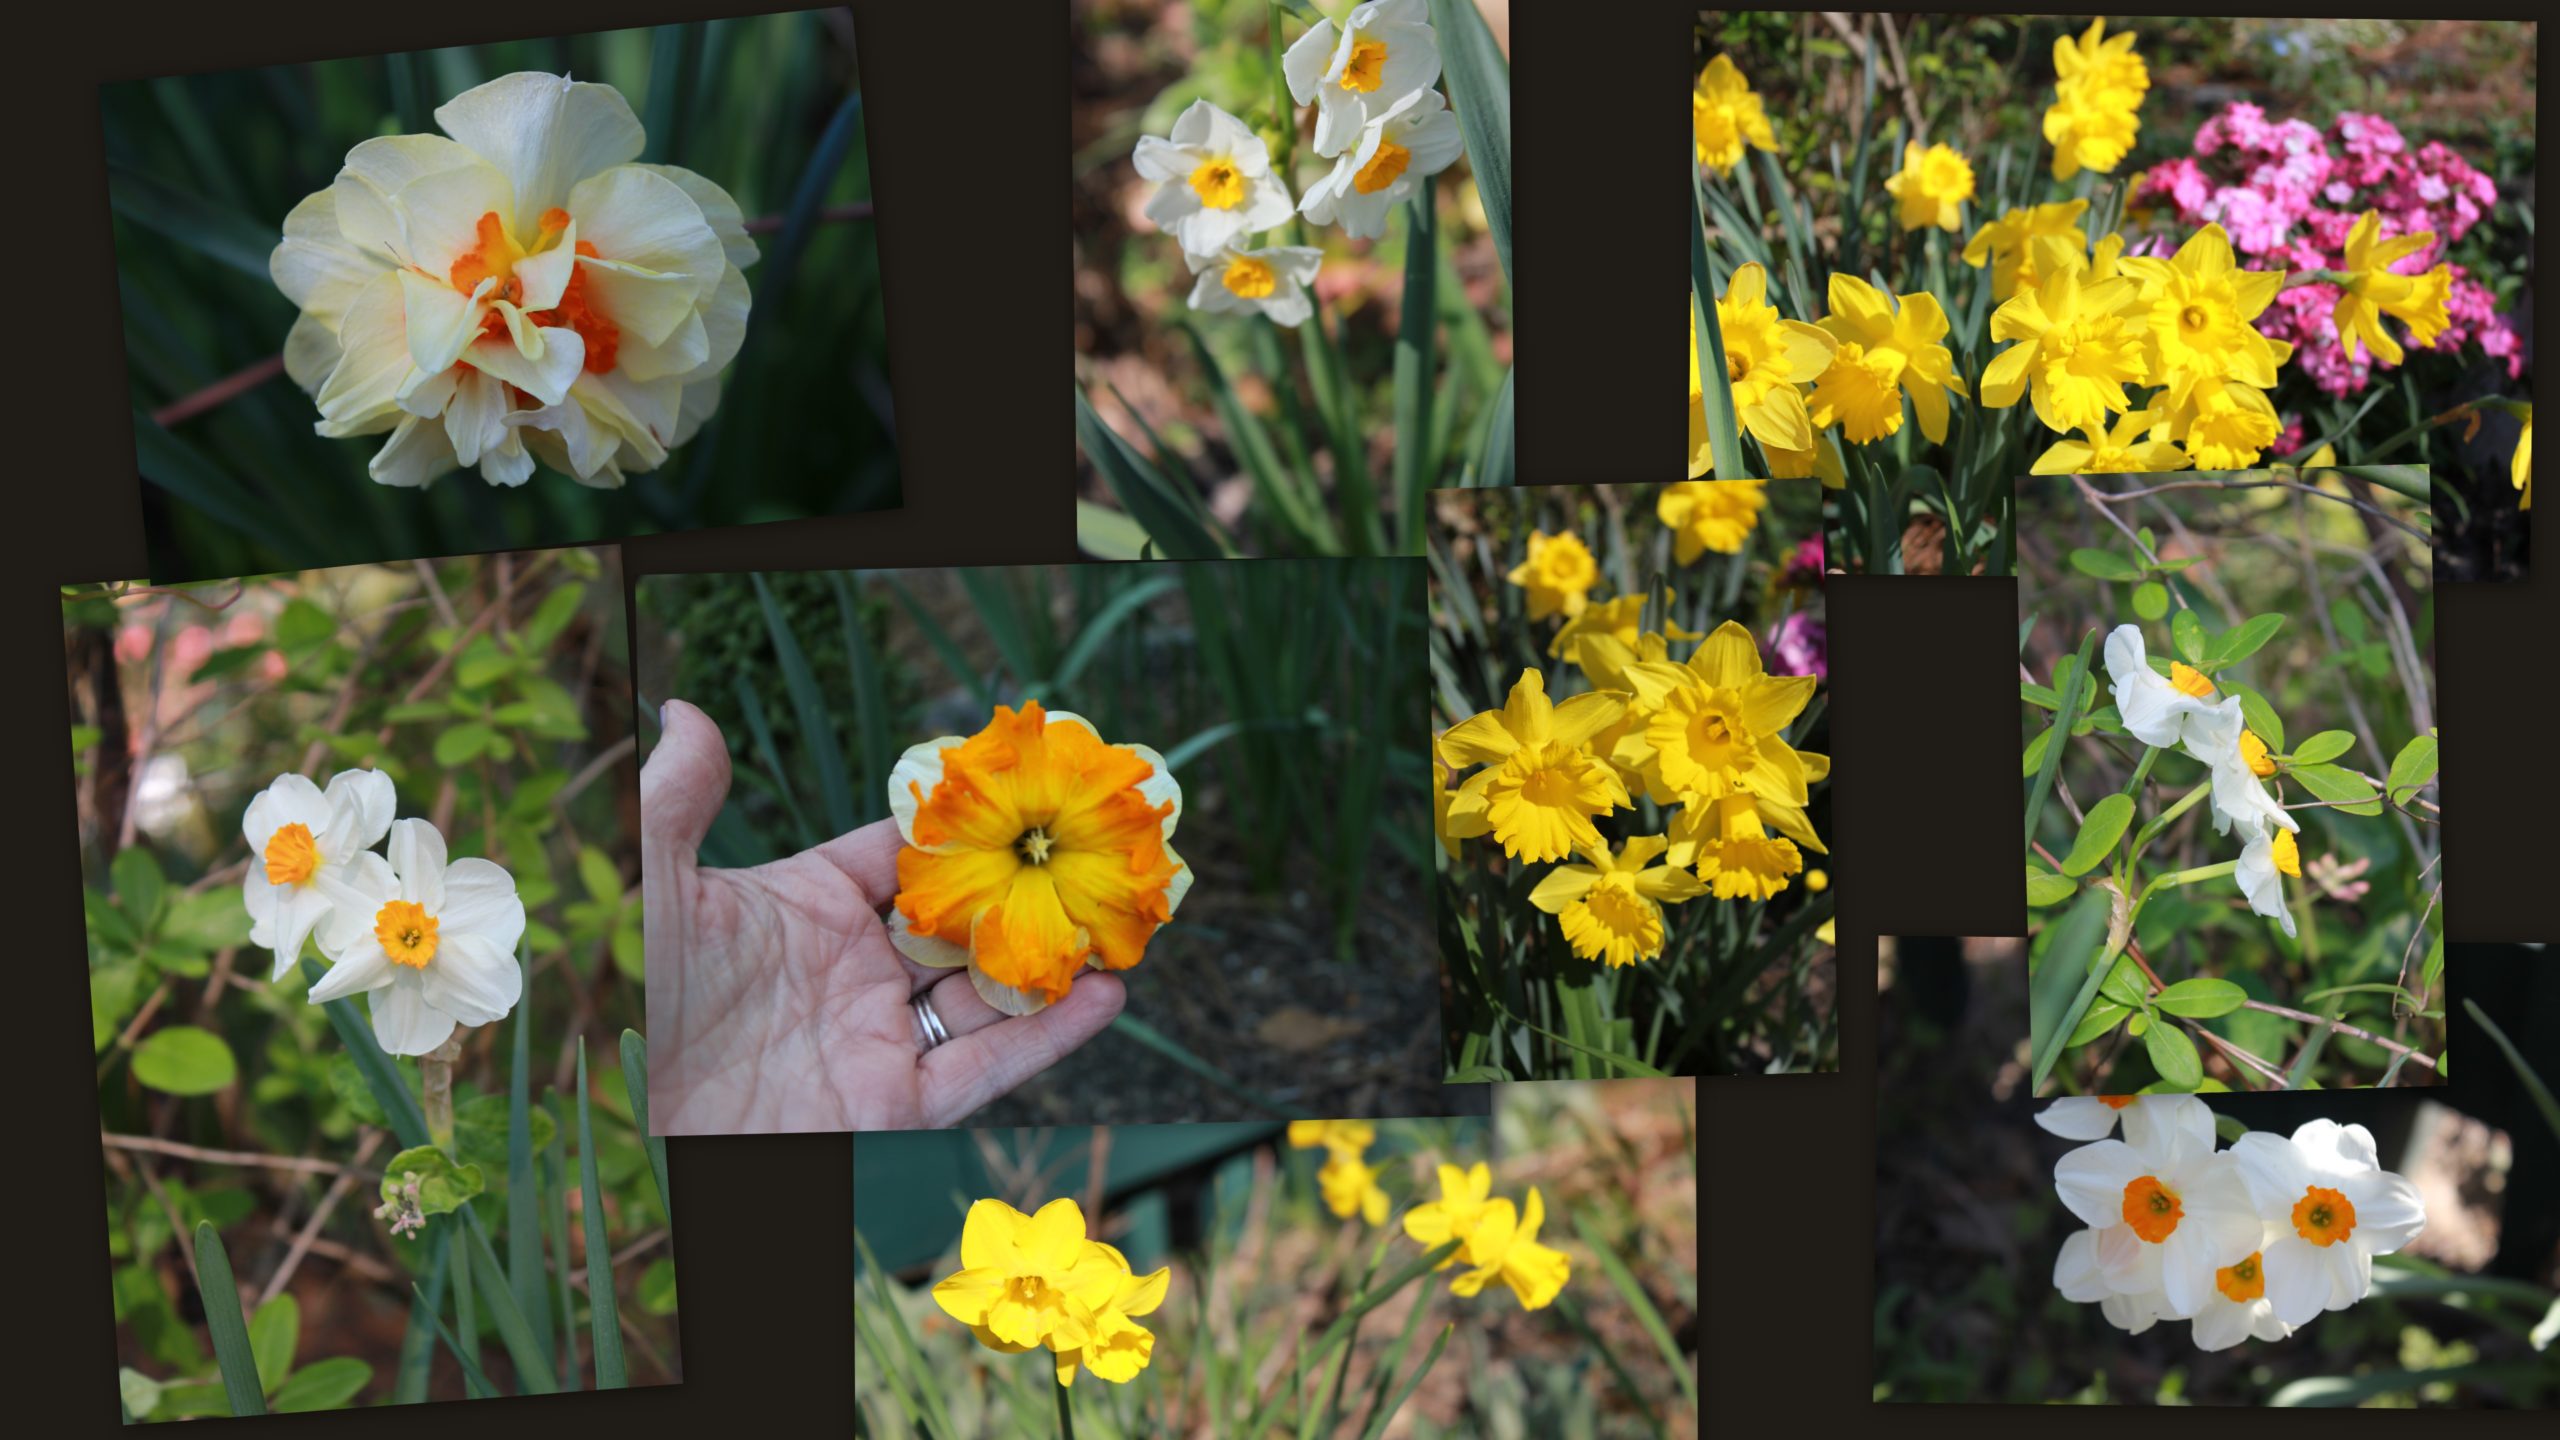 April 2, 2013 Daffodils